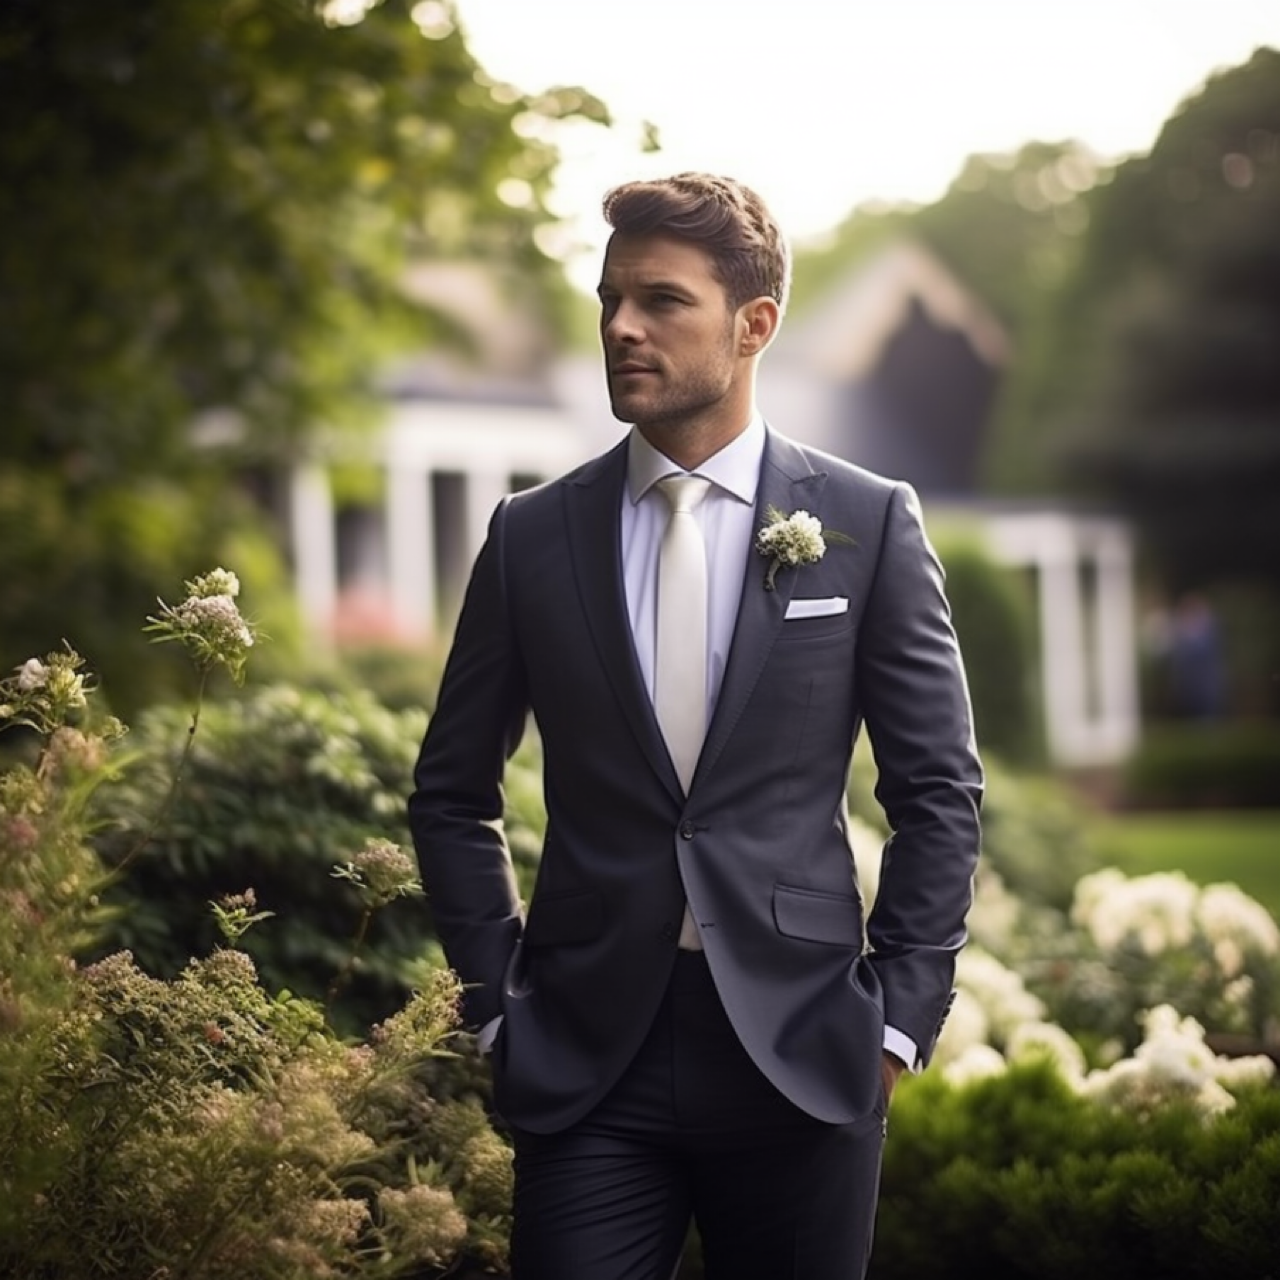 A groom wearing a bespoke wedding suit